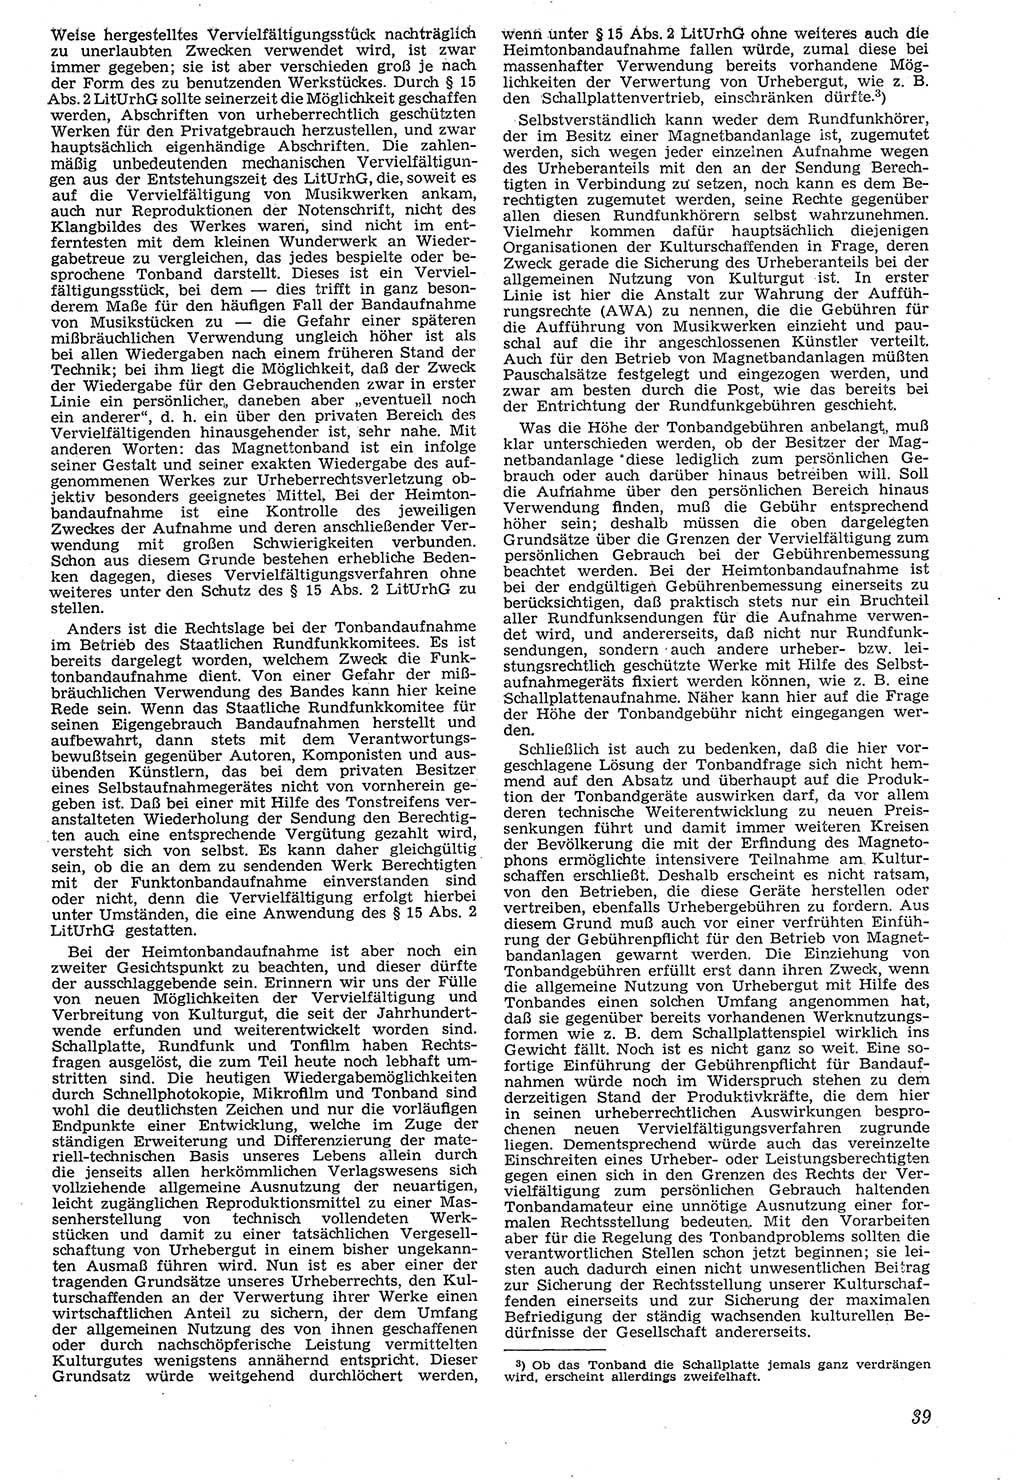 Neue Justiz (NJ), Zeitschrift für Recht und Rechtswissenschaft [Deutsche Demokratische Republik (DDR)], 7. Jahrgang 1953, Seite 39 (NJ DDR 1953, S. 39)